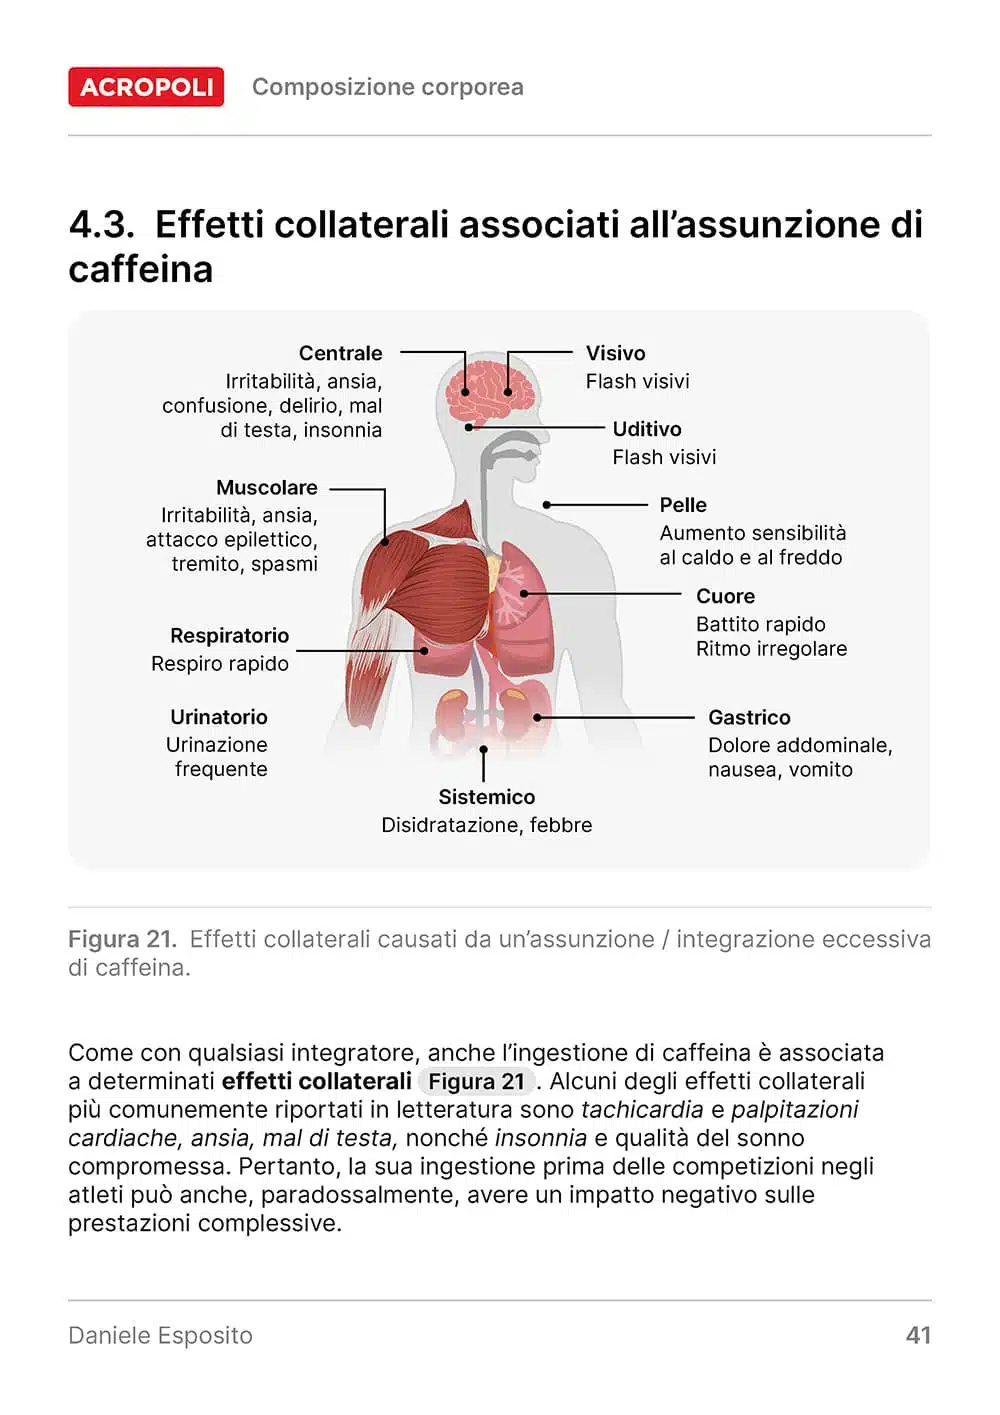 Caffeina Guida Completa Acropoli 34 - 4